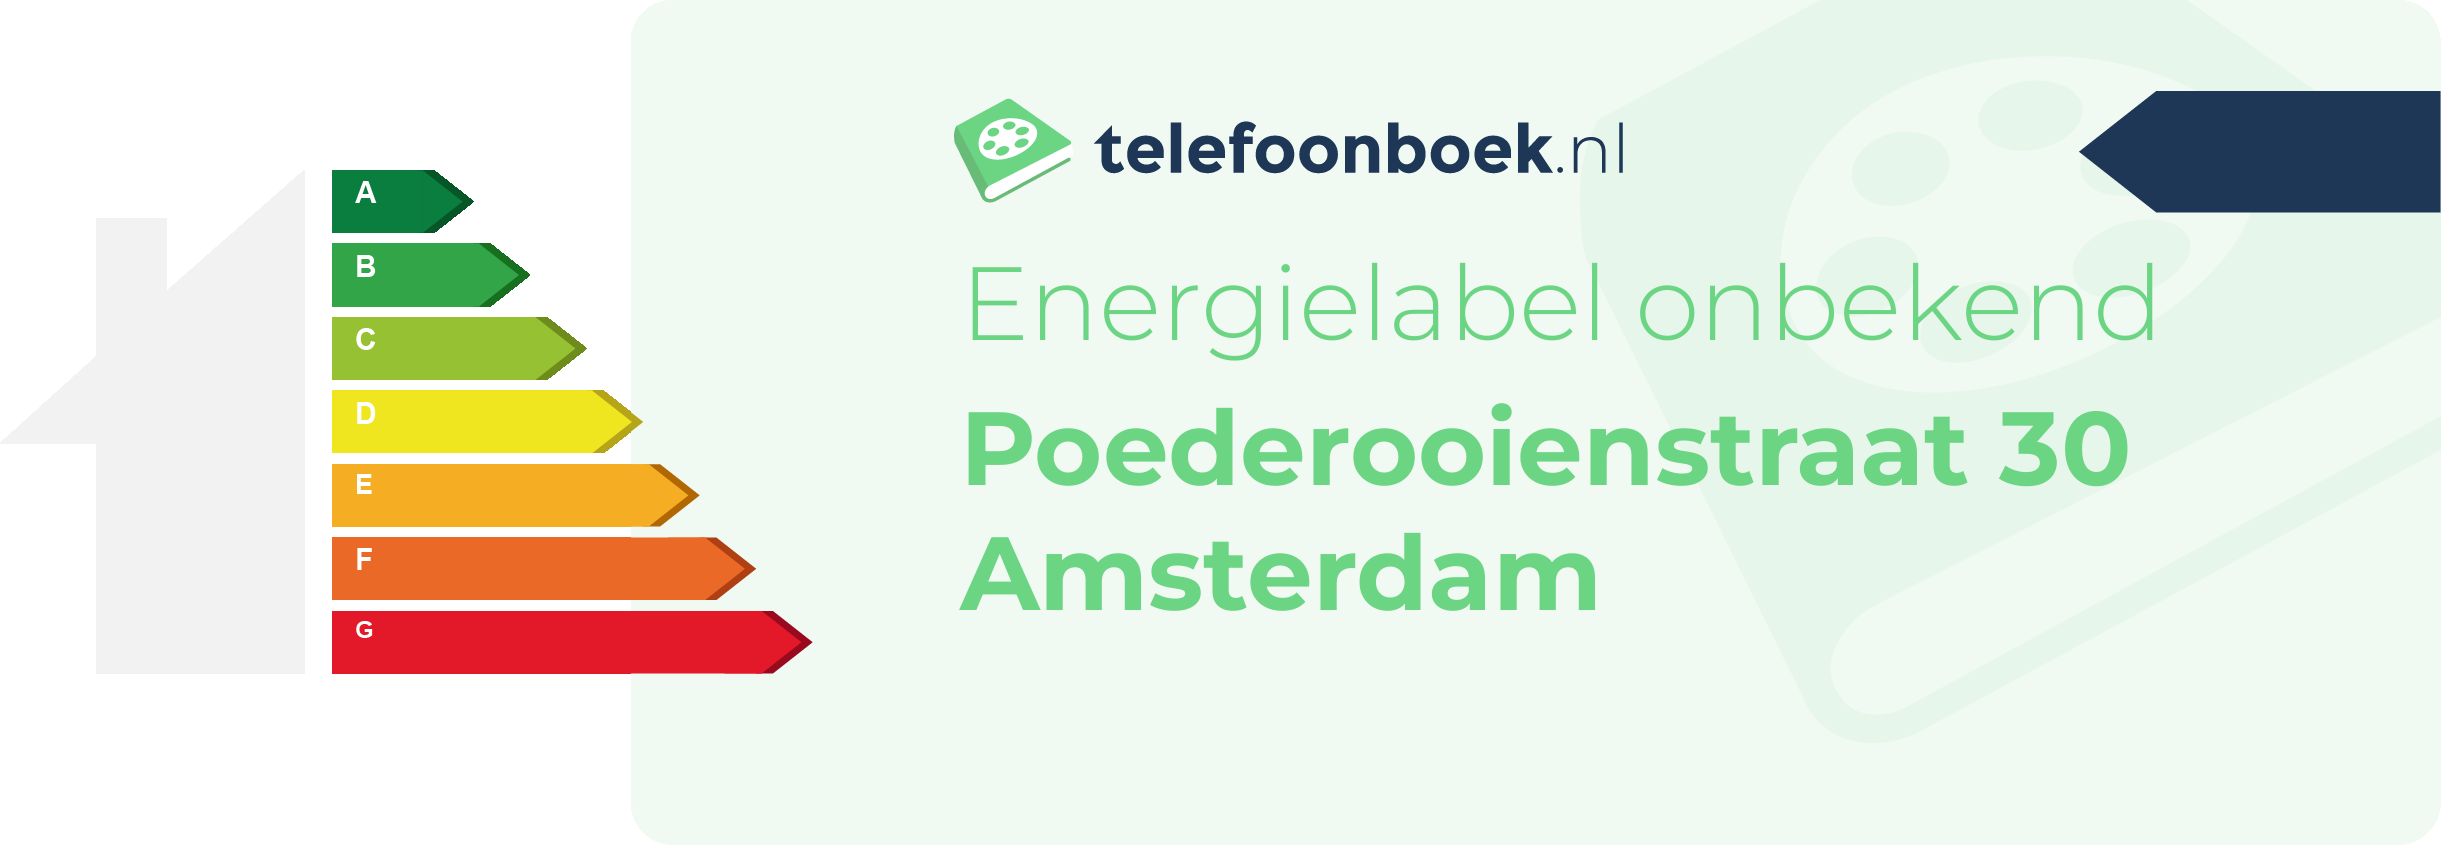 Energielabel Poederooienstraat 30 Amsterdam